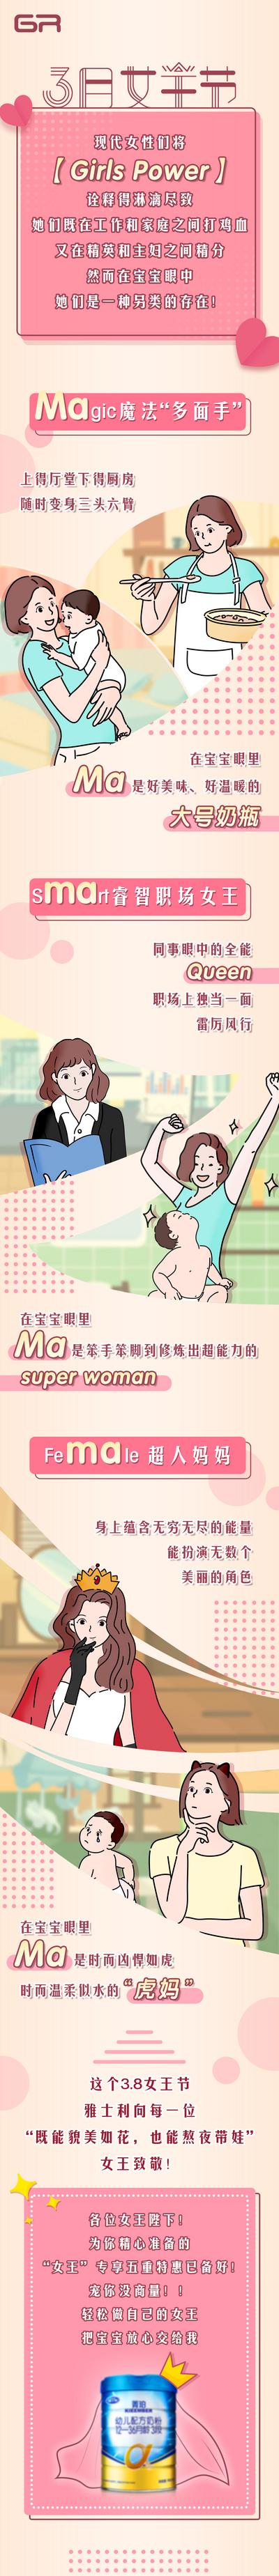 南门网 海报 长图 奶粉 38 妇女节 女王节 女神节 公历节日 妈妈 婴儿 插画 卡通